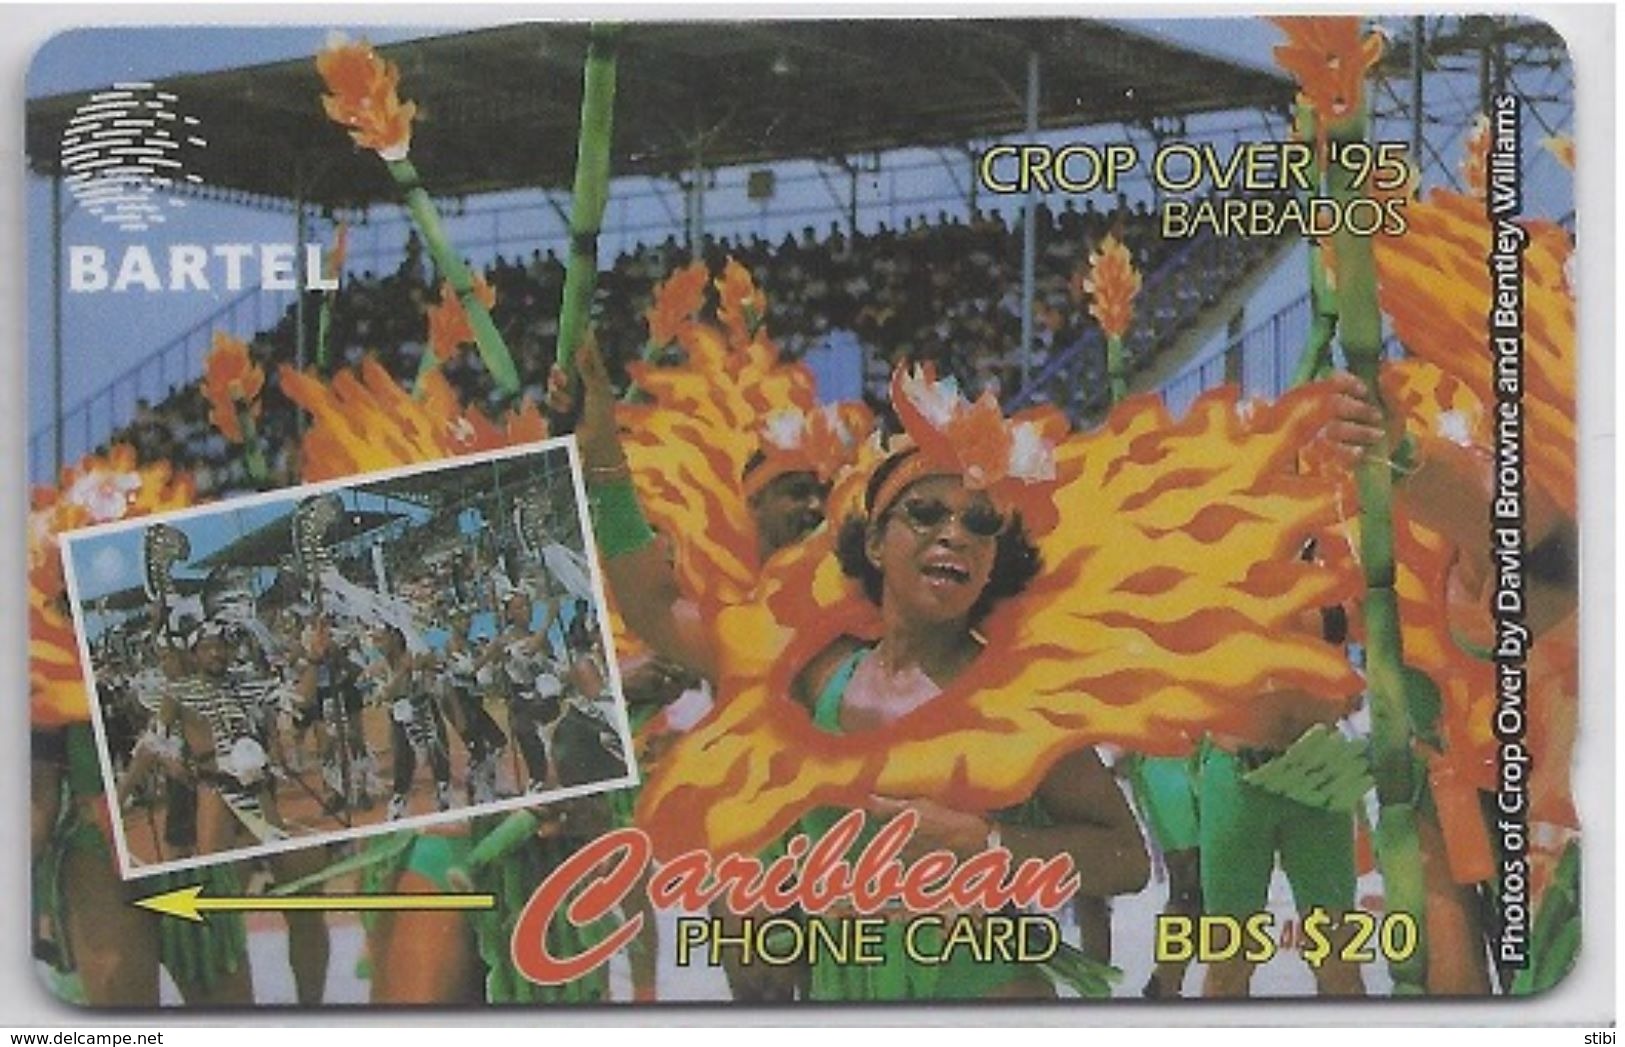 BARBADOS - CROP OVER '95 - 88CBDC - Barbados